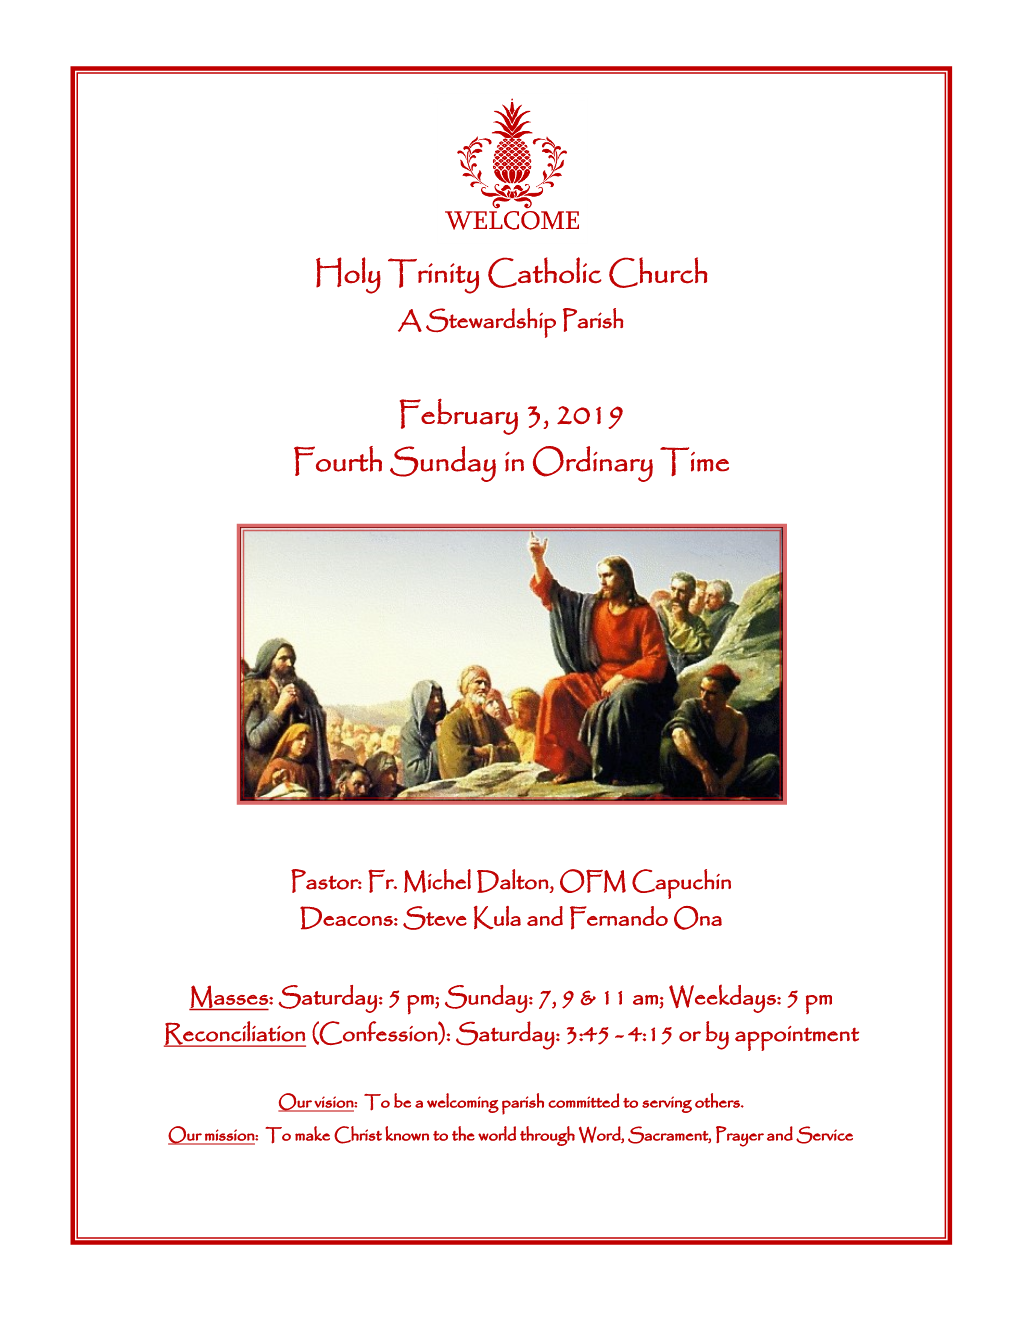 Holy Trinity Catholic Church February 3, 2019 Fourth Sunday in Ordinary